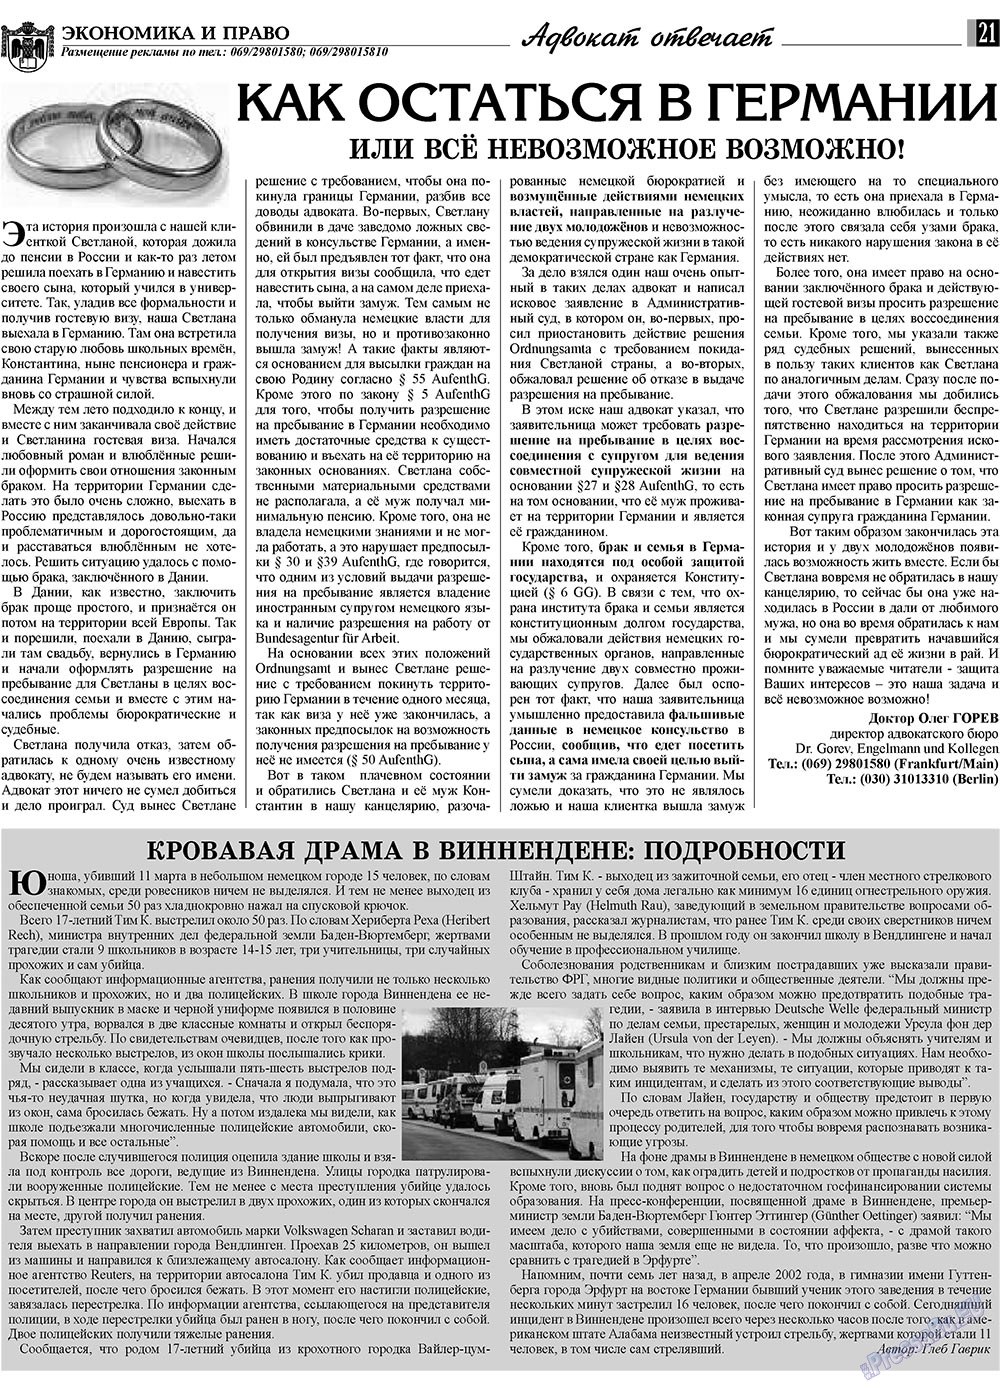 Экономика и право, газета. 2009 №4 стр.21